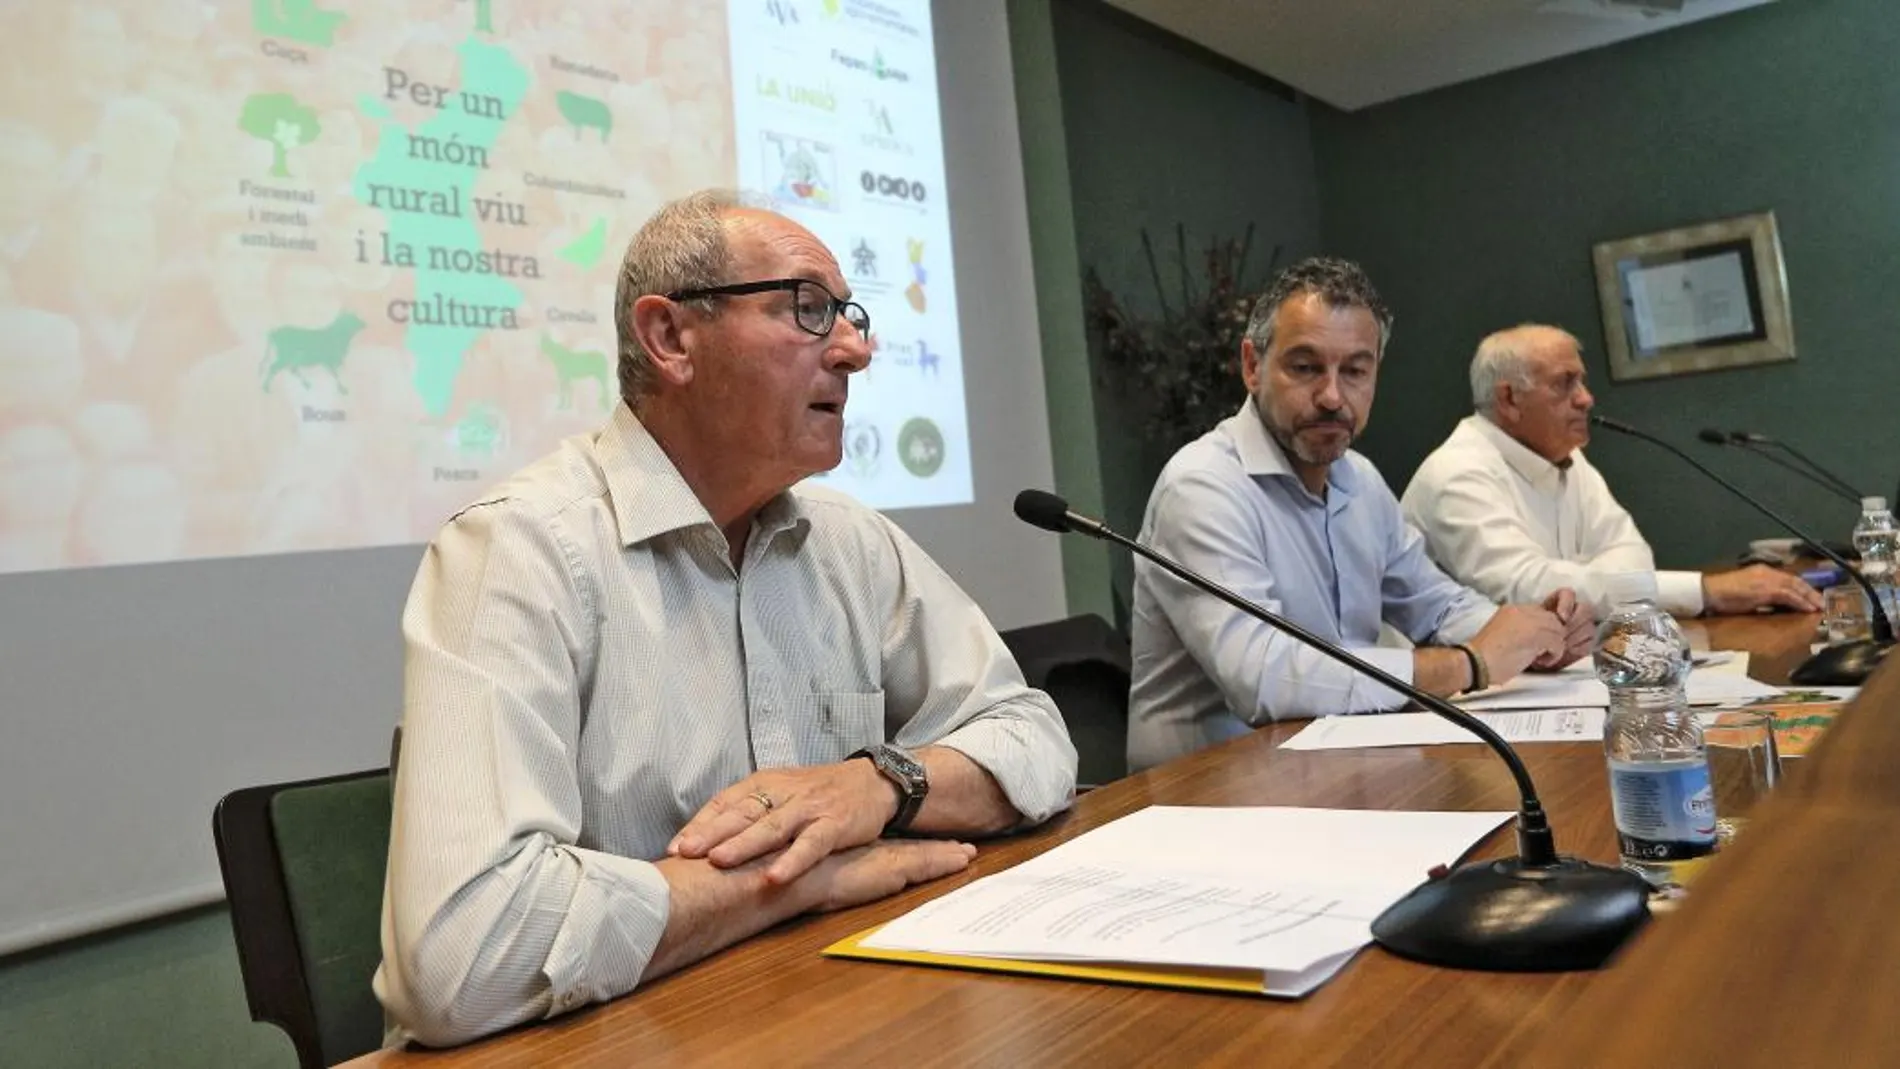 El presidente de la Asociación Valenciana de Agricultores (AVA), Cristóbal Aguado, lamentó ayer que el procedimiento se haya visto empañado por descalificaciones hacia miembros de la organización (Efe)